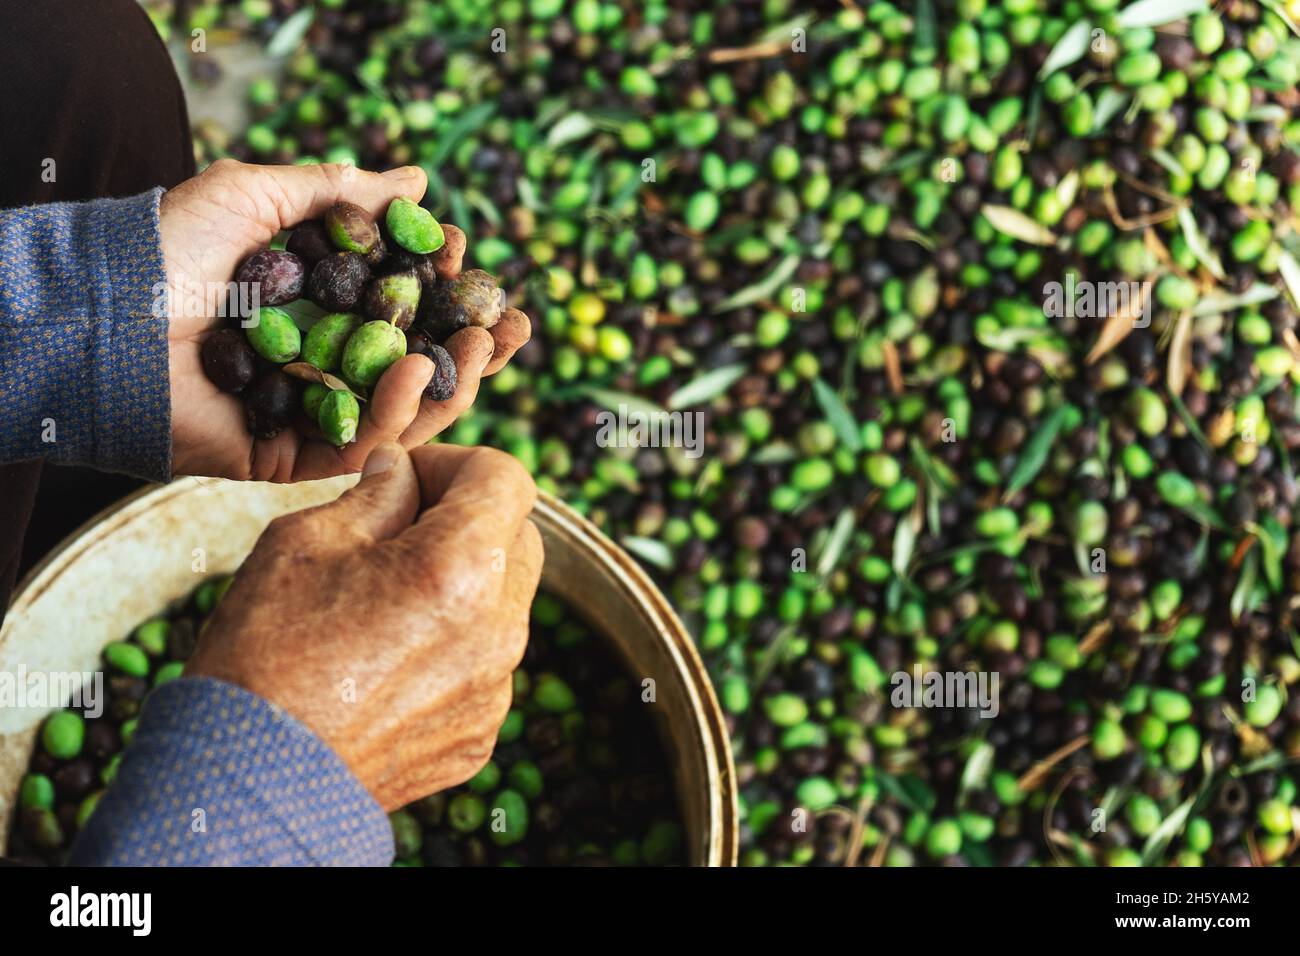 Hände mit Oliven, Ernte von Pflanzen während der Ernte, grün, schwarz, schlagen, um extra natives Öl zu erhalten. Stockfoto